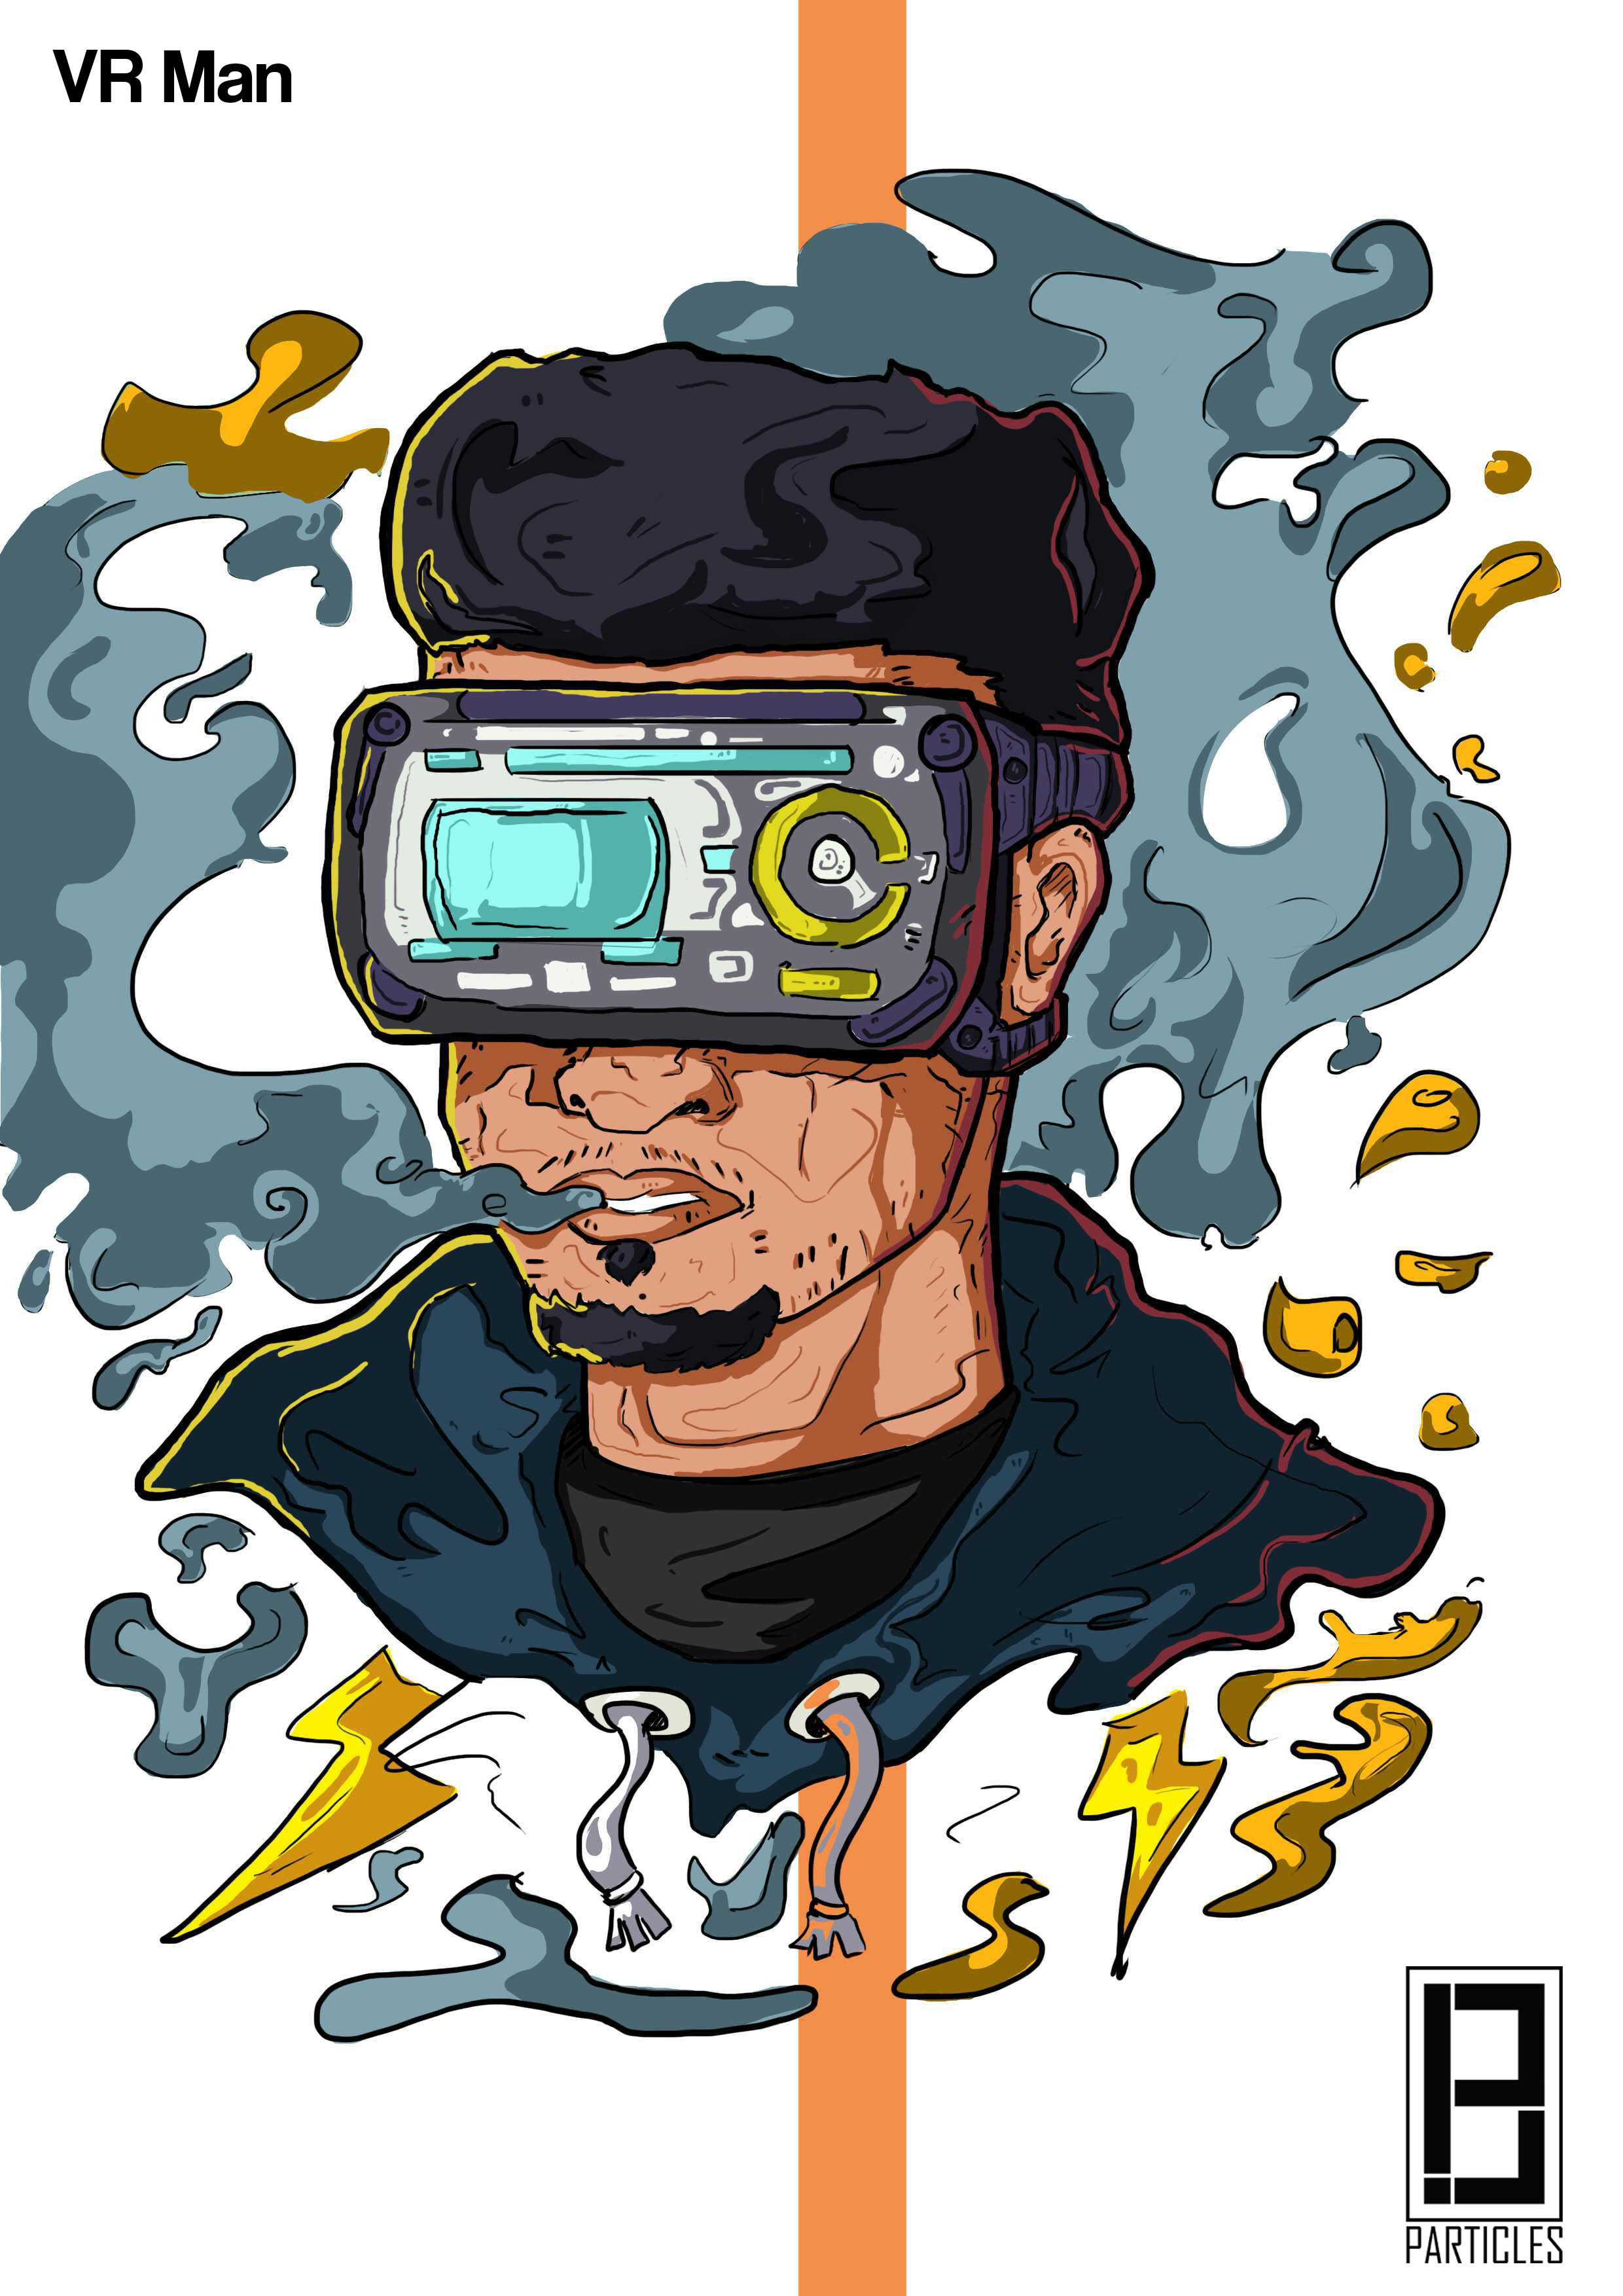 VR Man